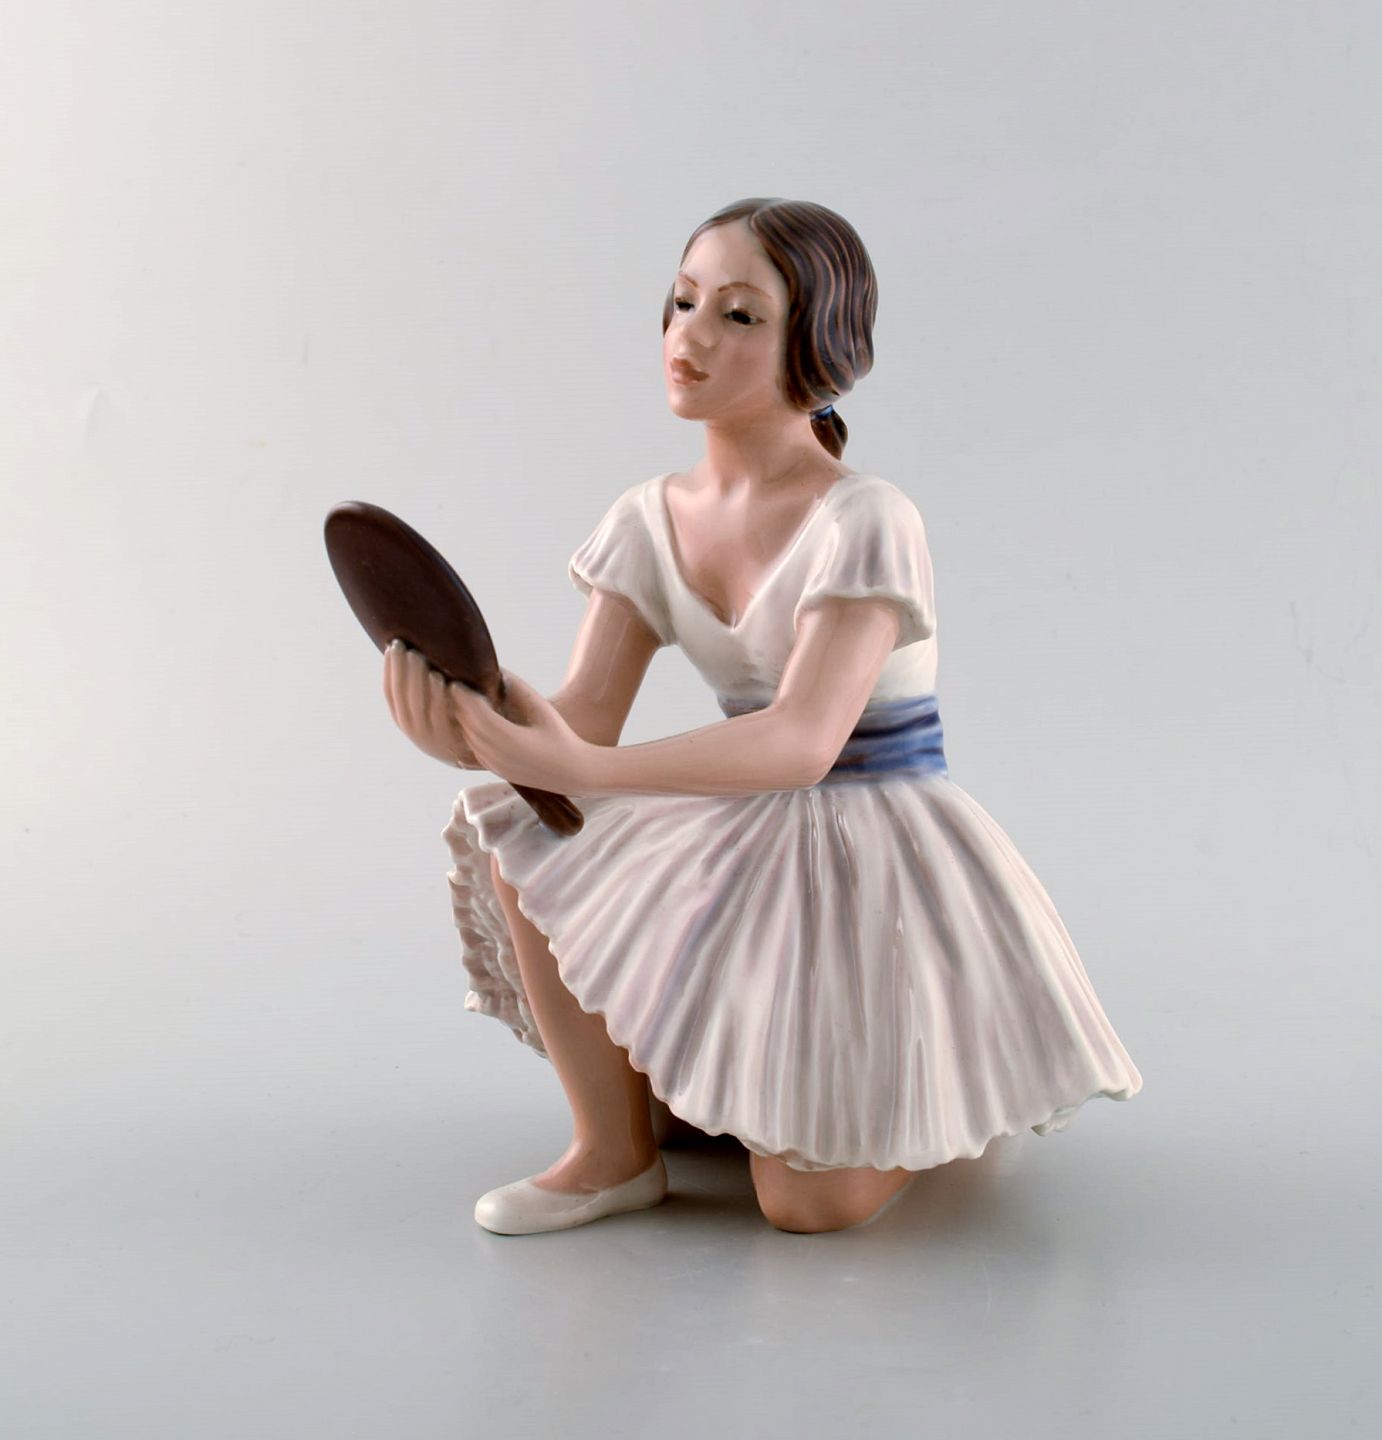 www.Antikvitet.net Dahl Jensen porcelænsfigur. Ballerina med spejl. Modelnummer 1. Sortering. 1920/30'erne.